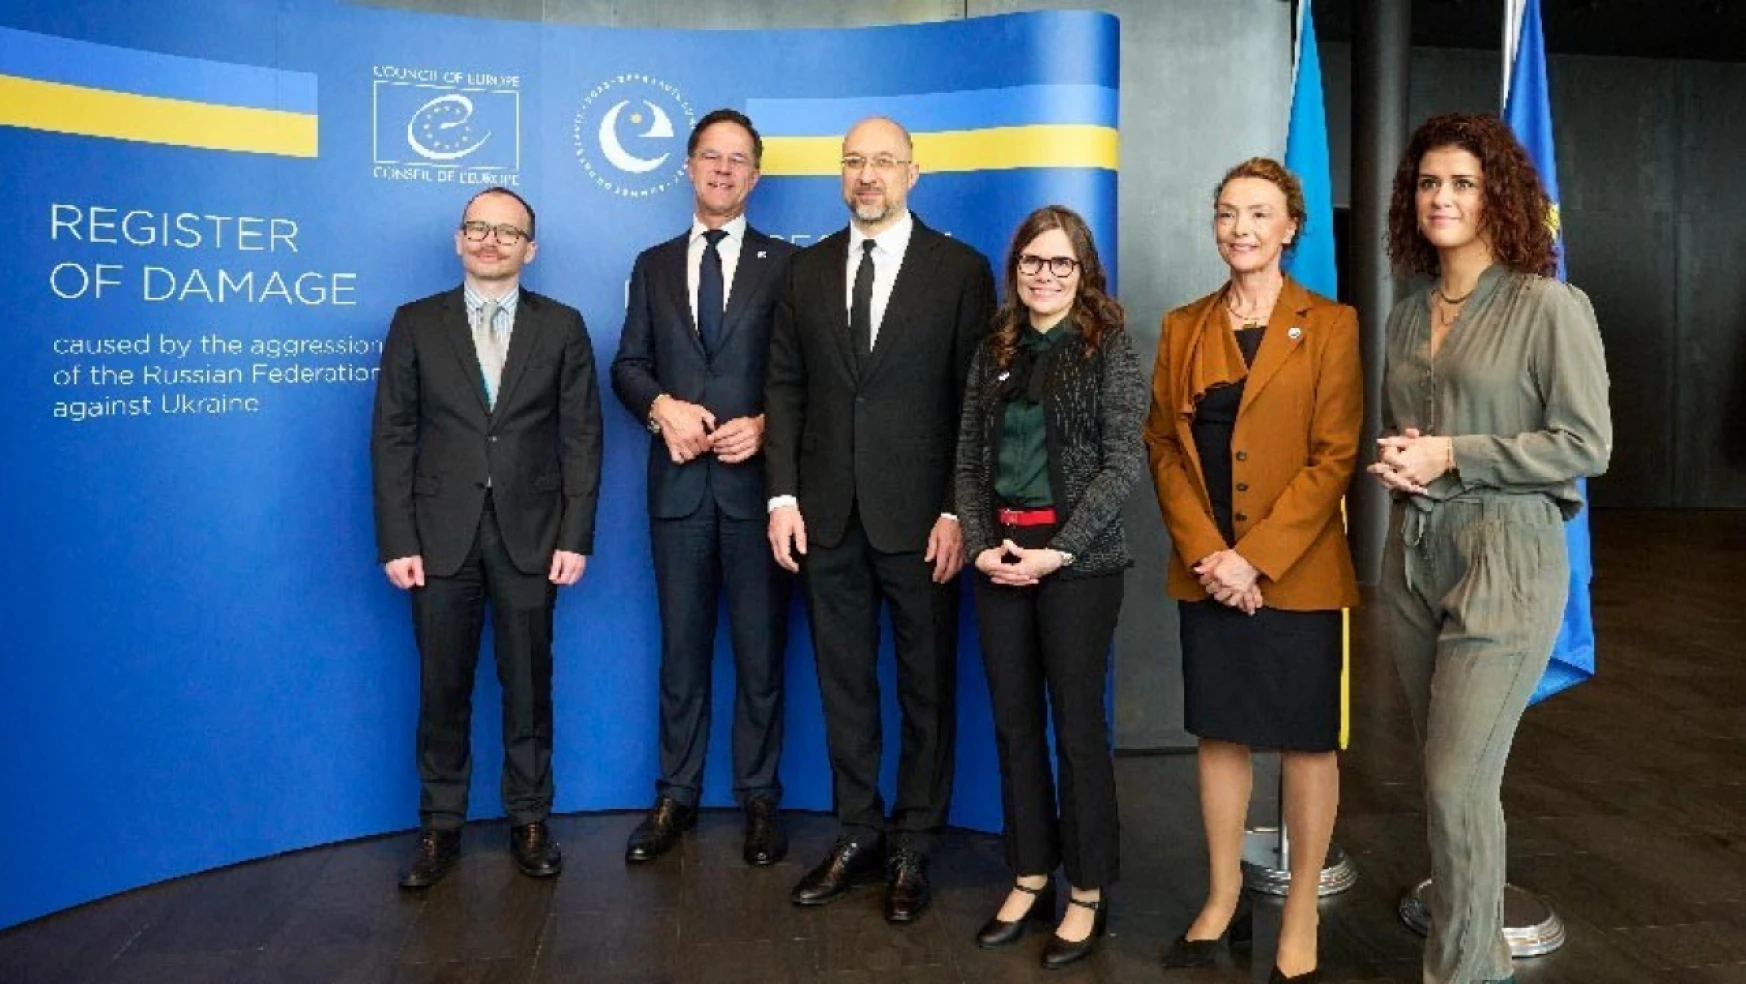 Avrupa Konseyi zirvesinde Ukrayna için Zarar Kaydı mekanizması kurulmasına onay